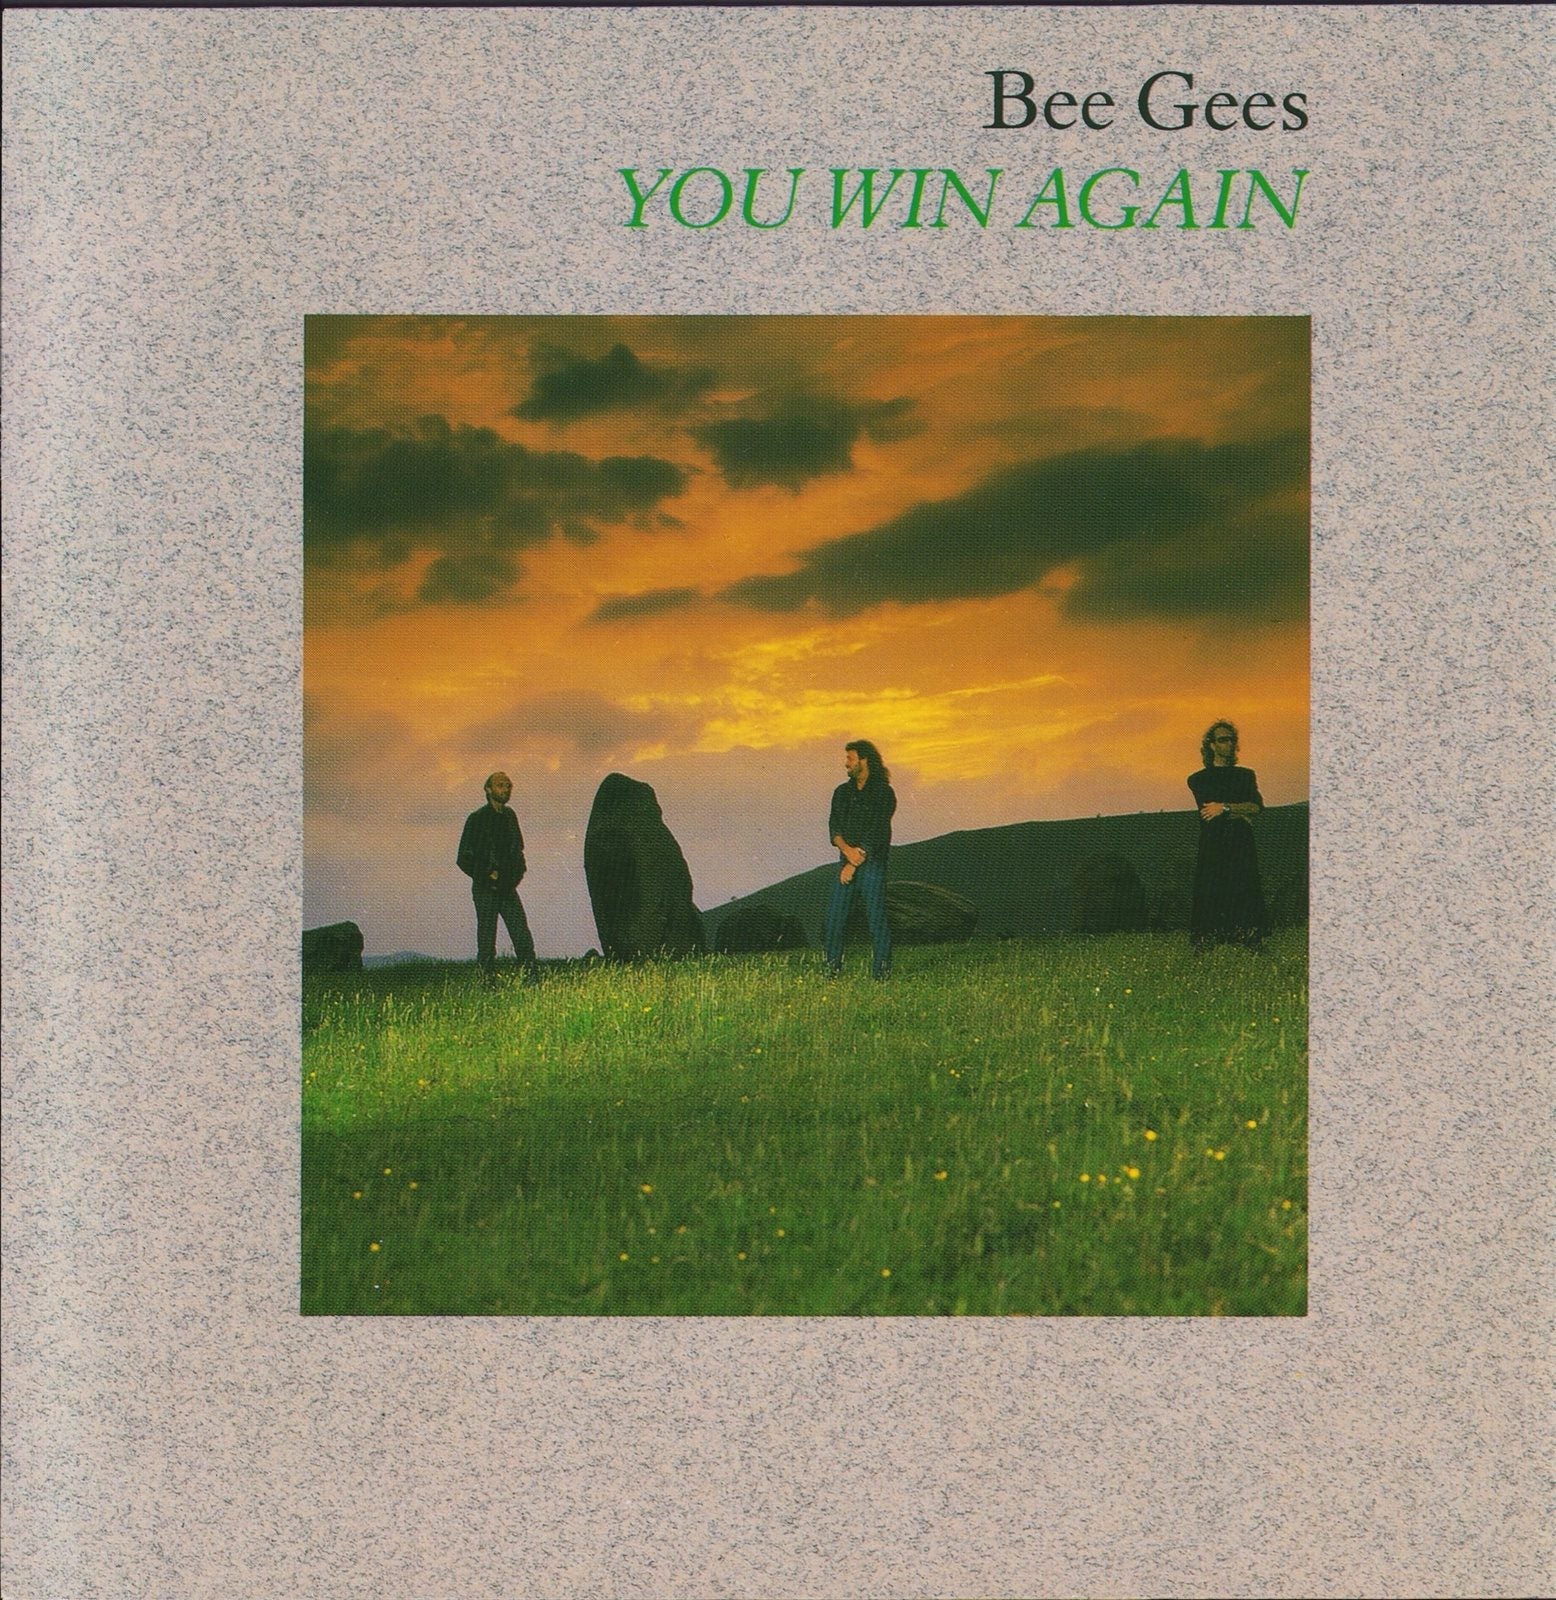 Bee Gees ‎- You Win Again (Vinyl 12")